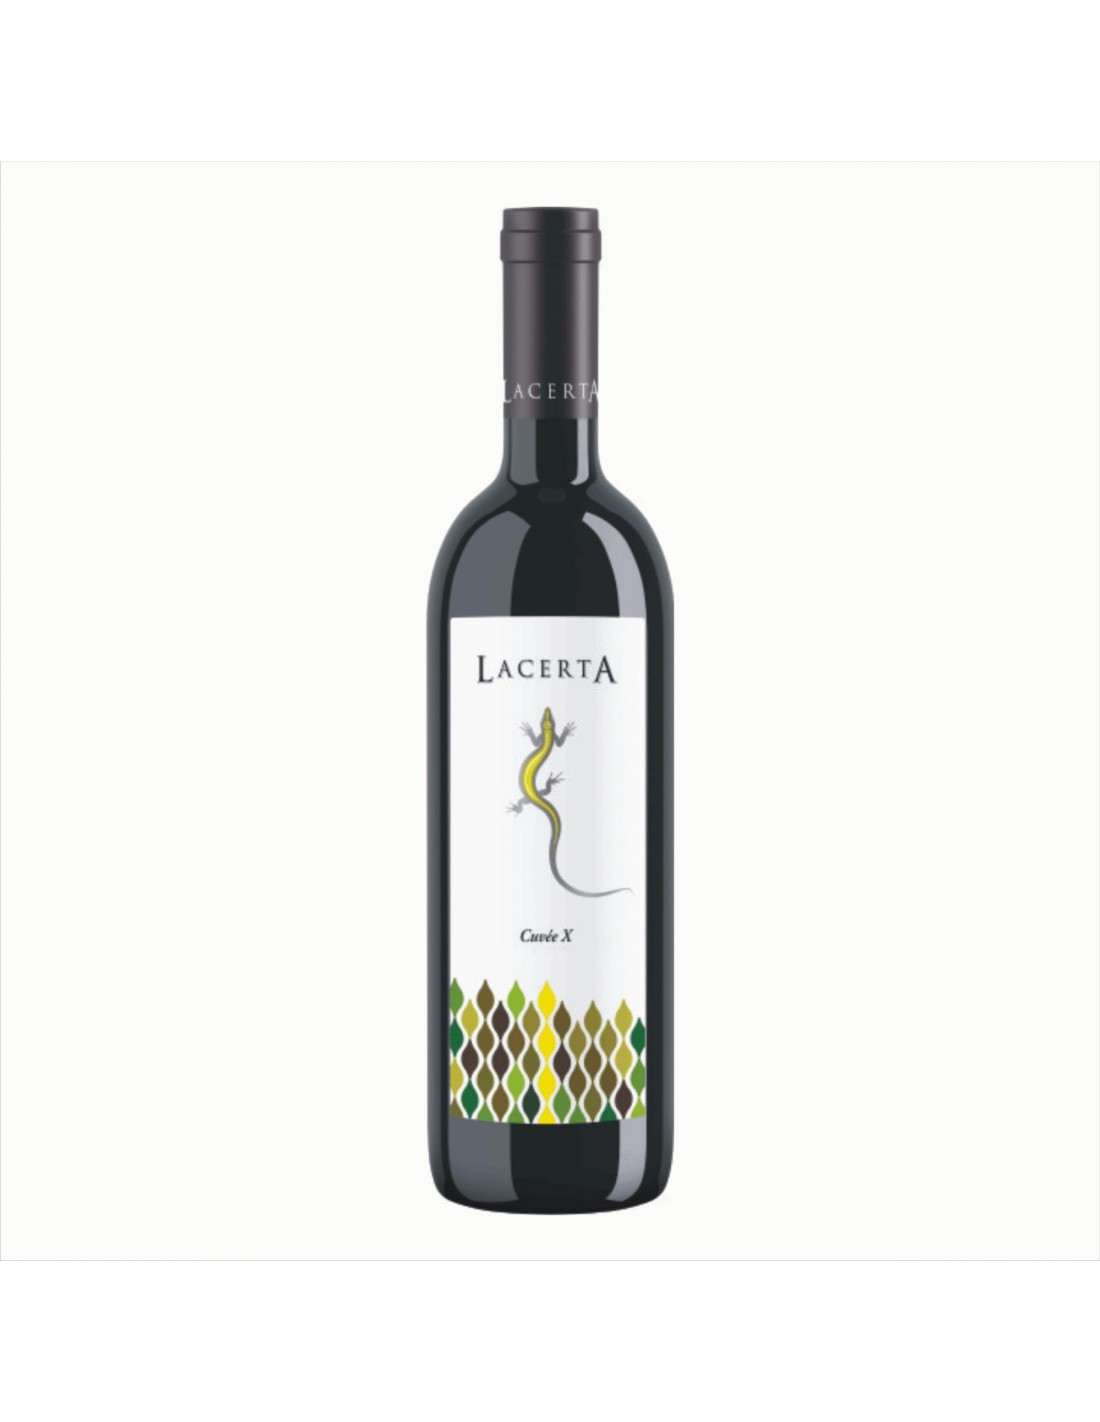 Vin alb, Lacerta Cuvee X Dealu Mare, 2017, 0.75L, 14.4% alc., Romania